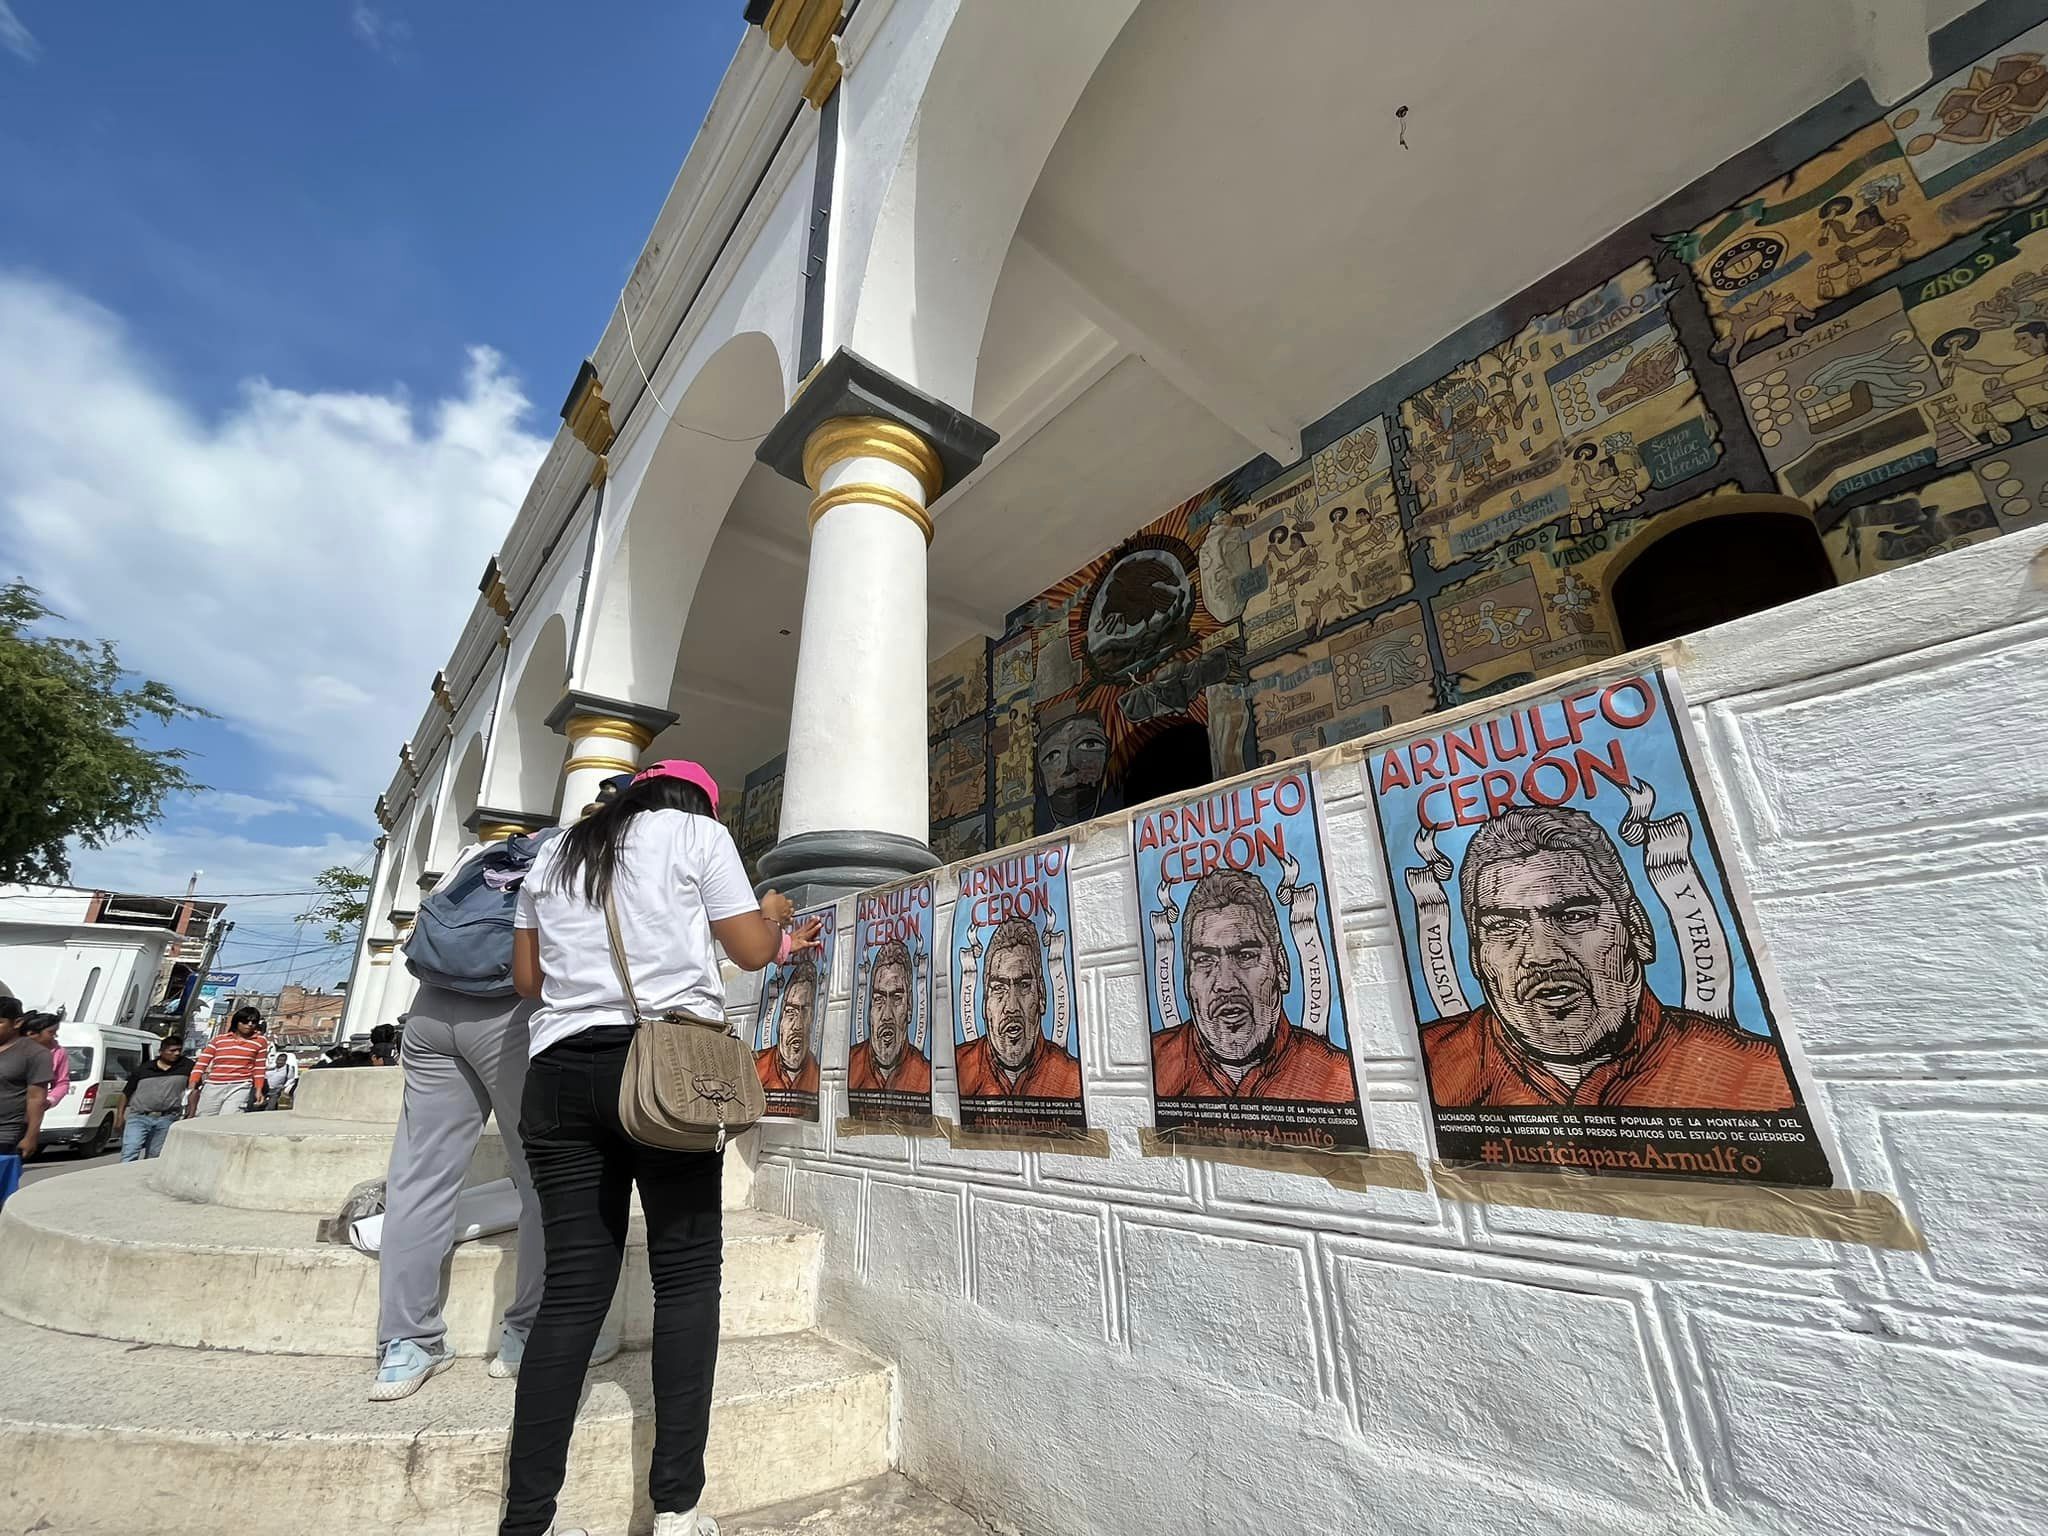 Estudiantes y activistas se movilizan exigiendo justicia por el asesinato de Arnulfo Cerón Soriano defensor indígena en Tlapa, Guerrero